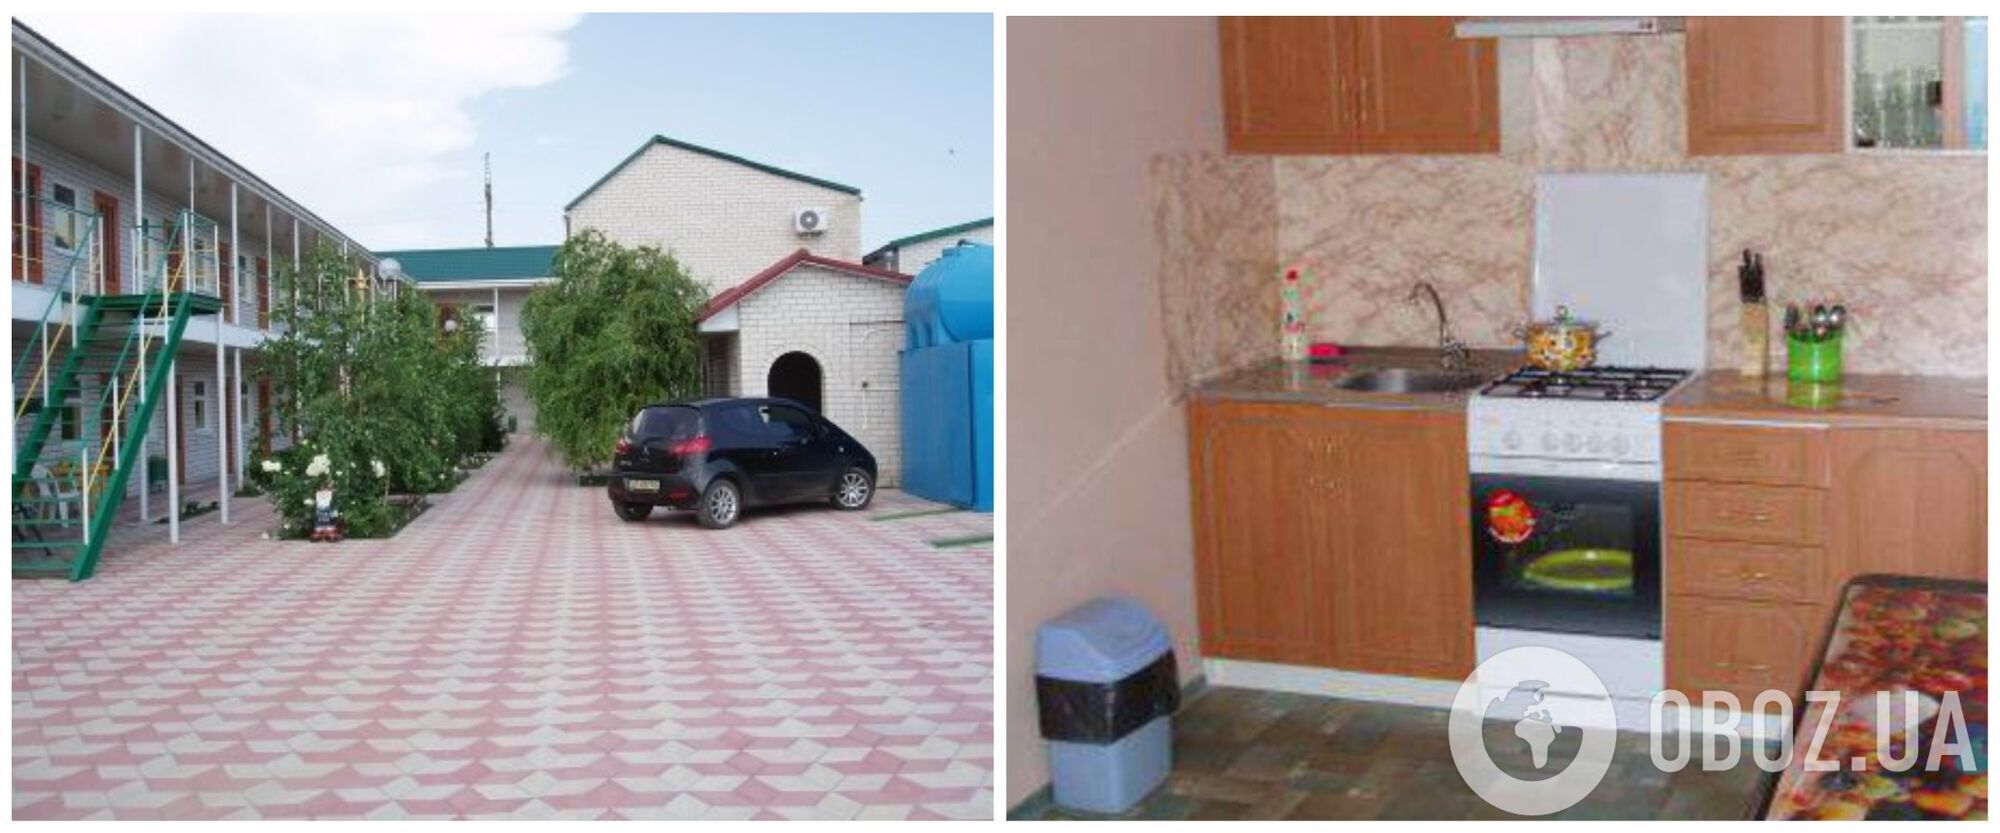 Гостьовий будинок "Агат" у центрі Кирилівки зі спільною кухнею для пожильців